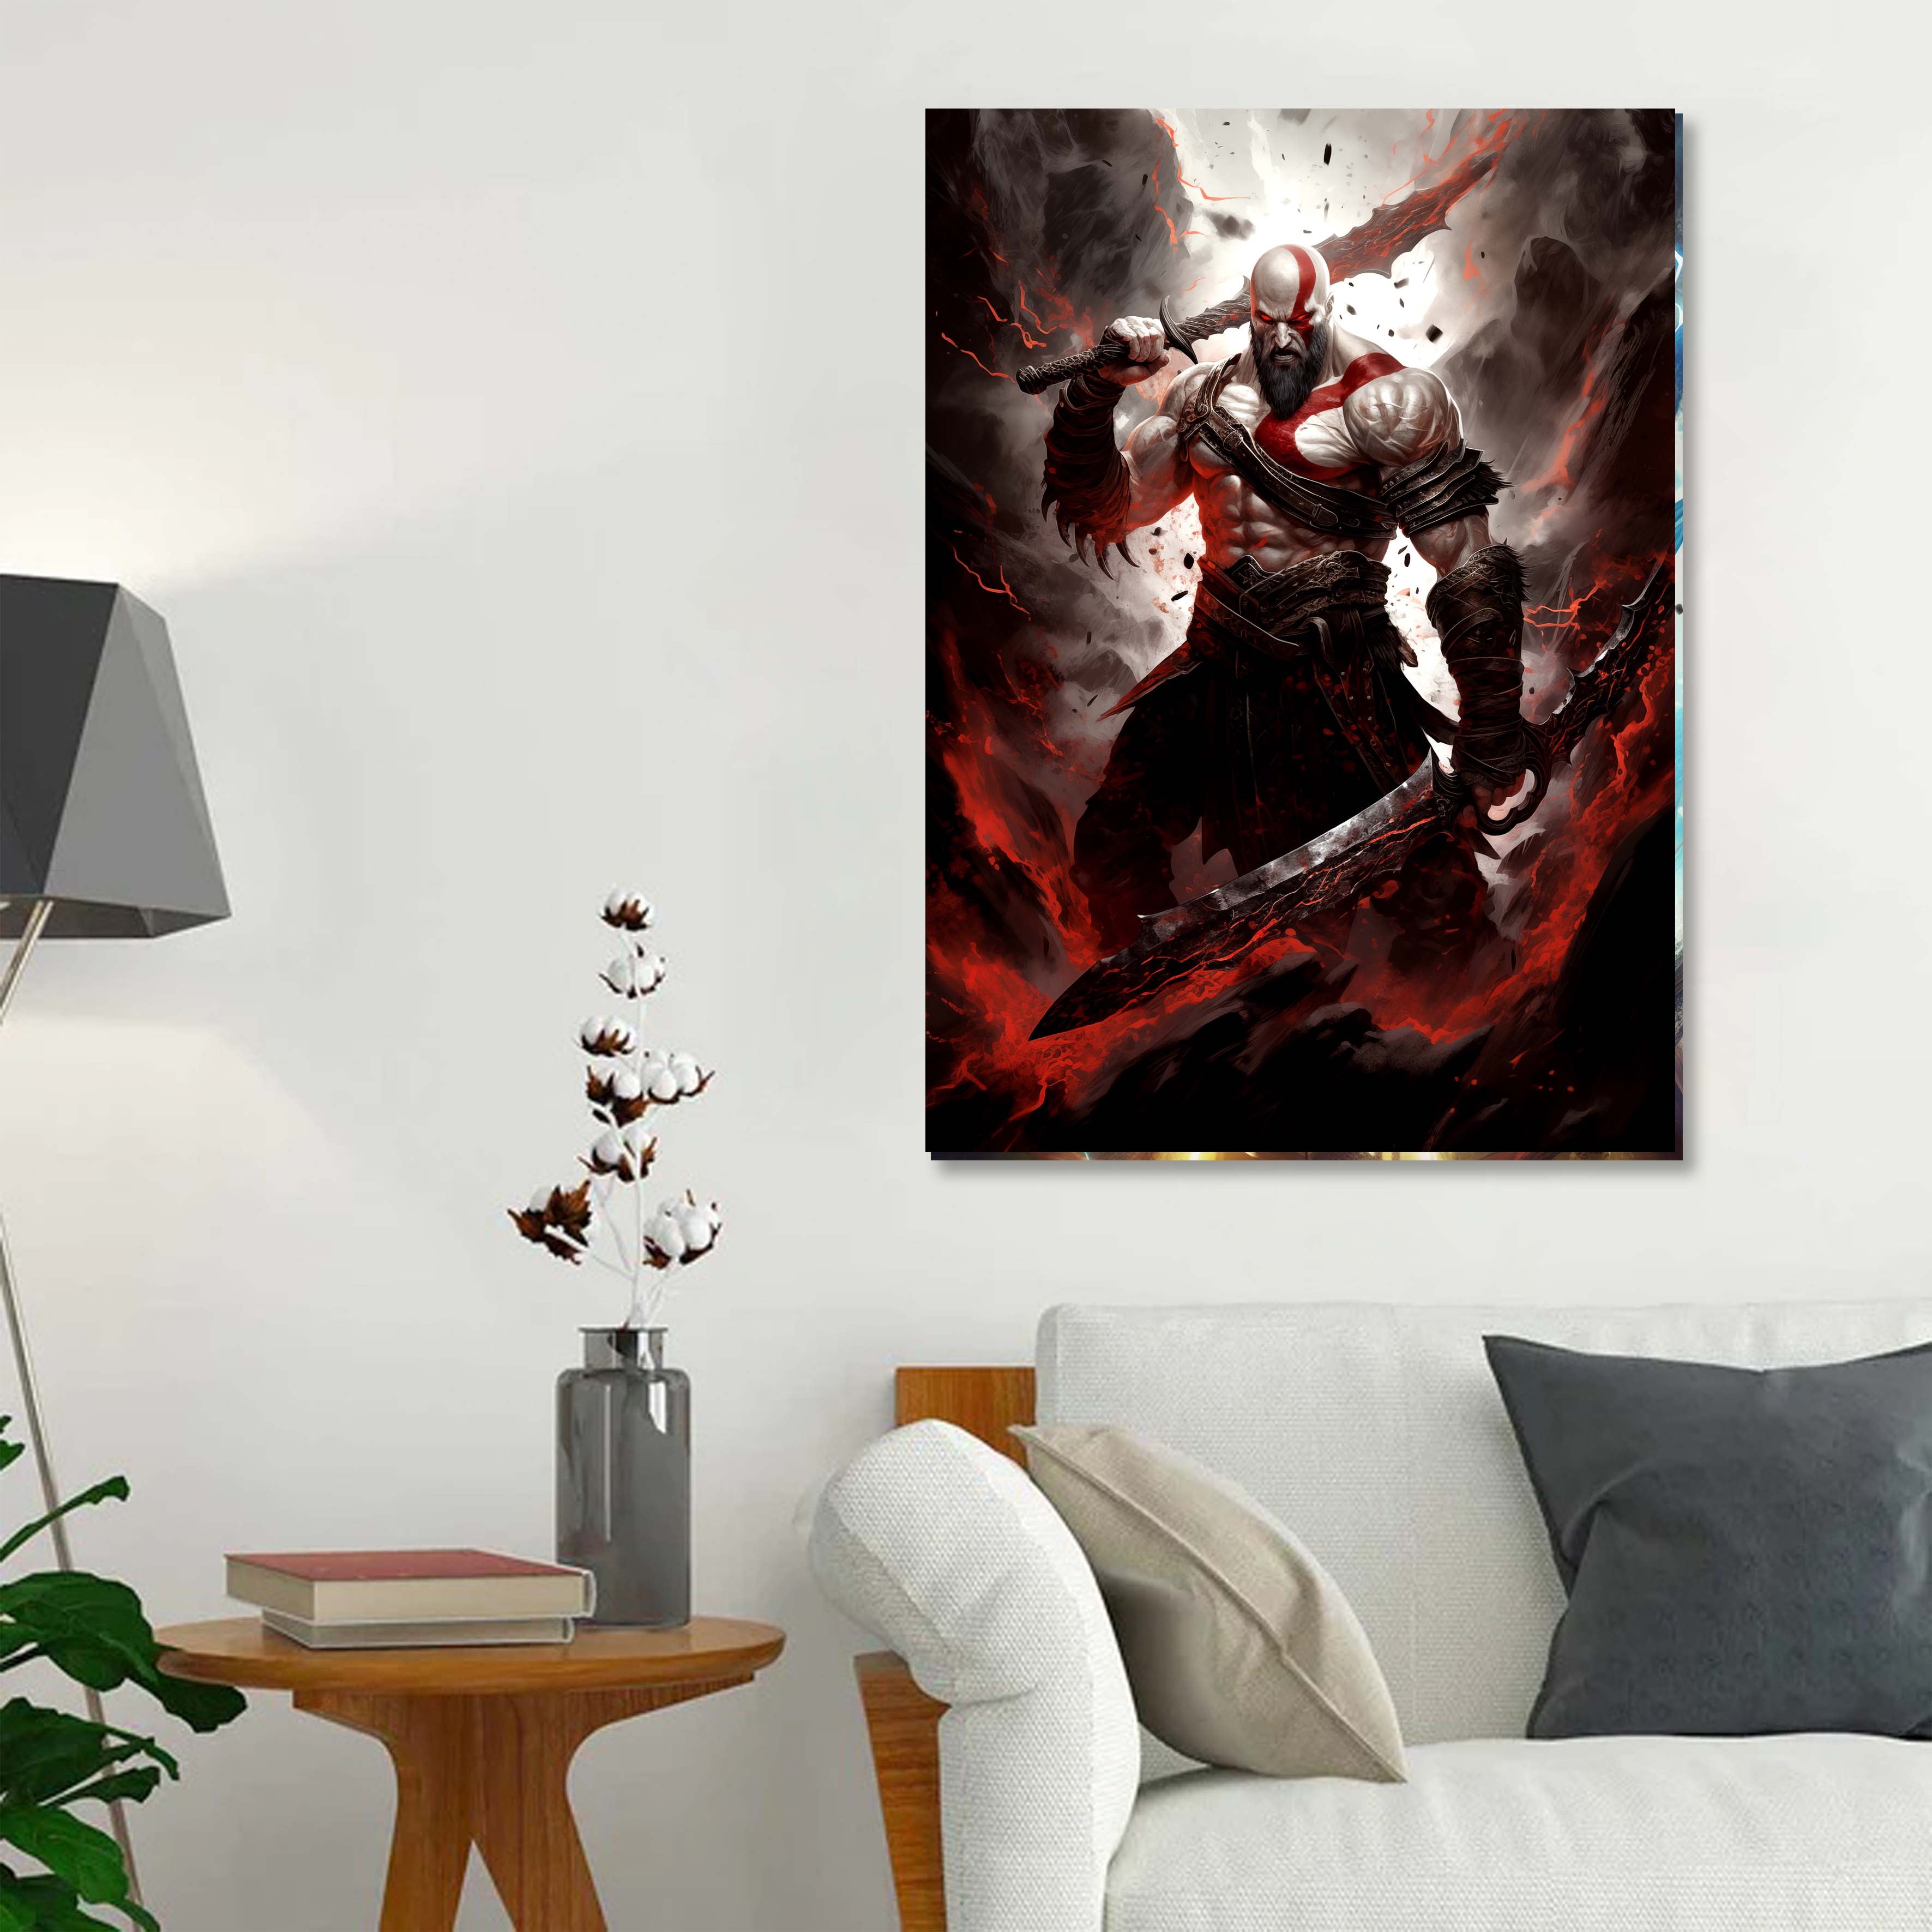 God of War Kratos-designed by @Fluency Room